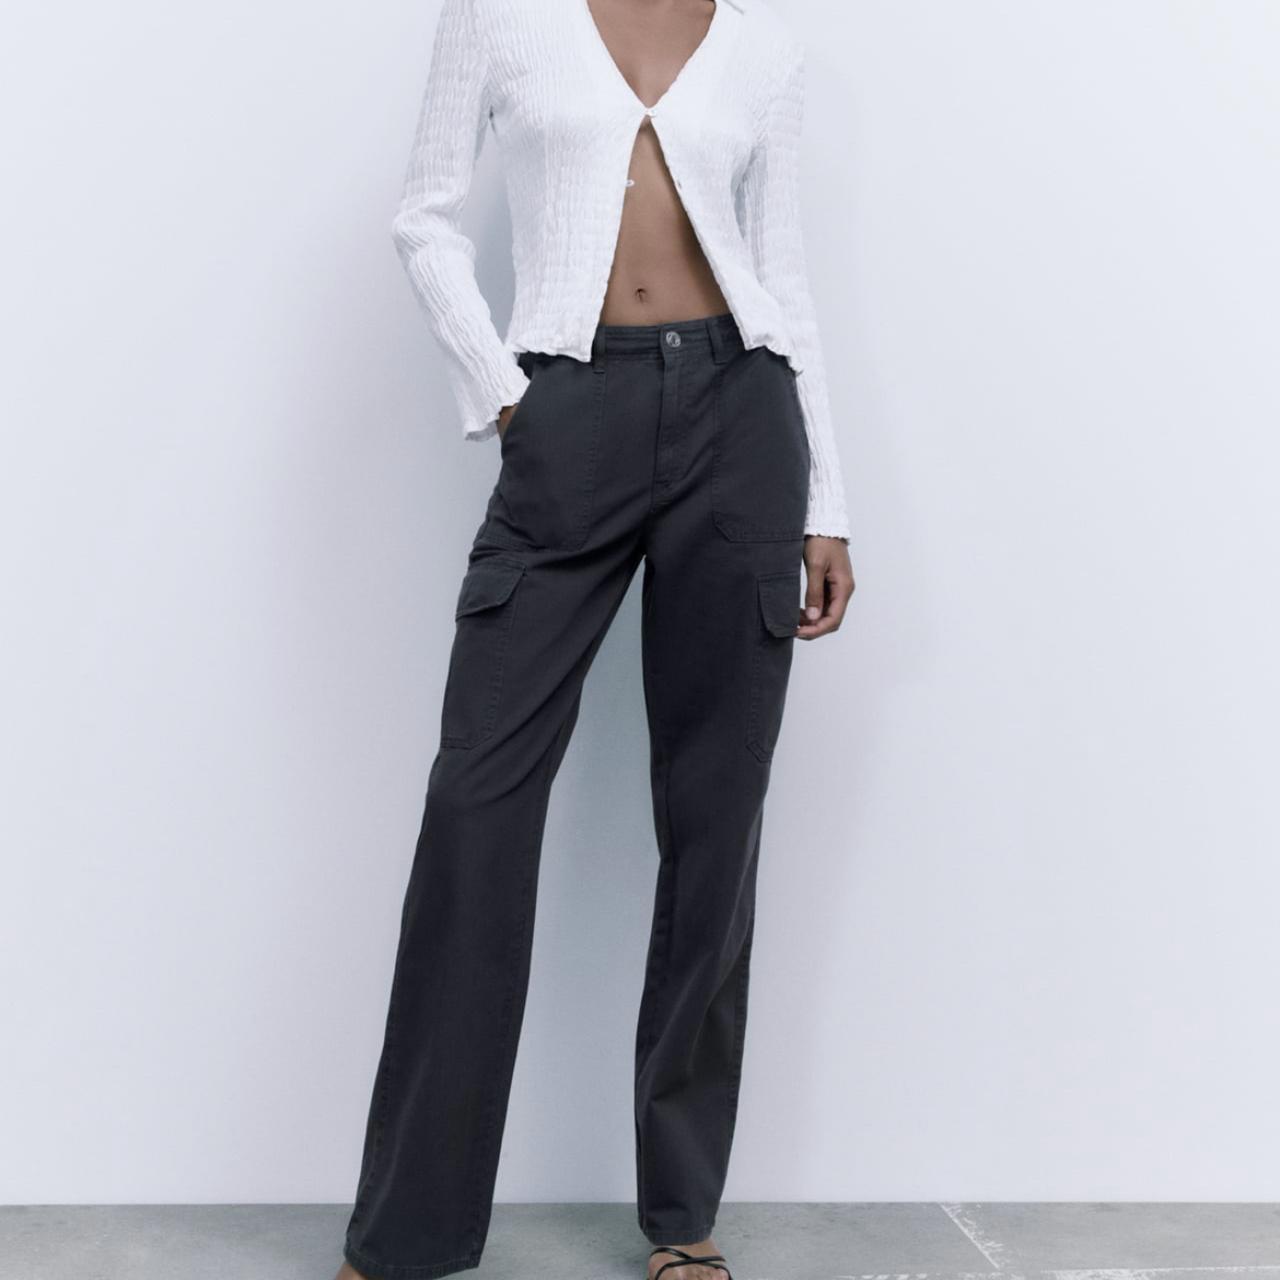 Zara Women's Black Trousers | Depop